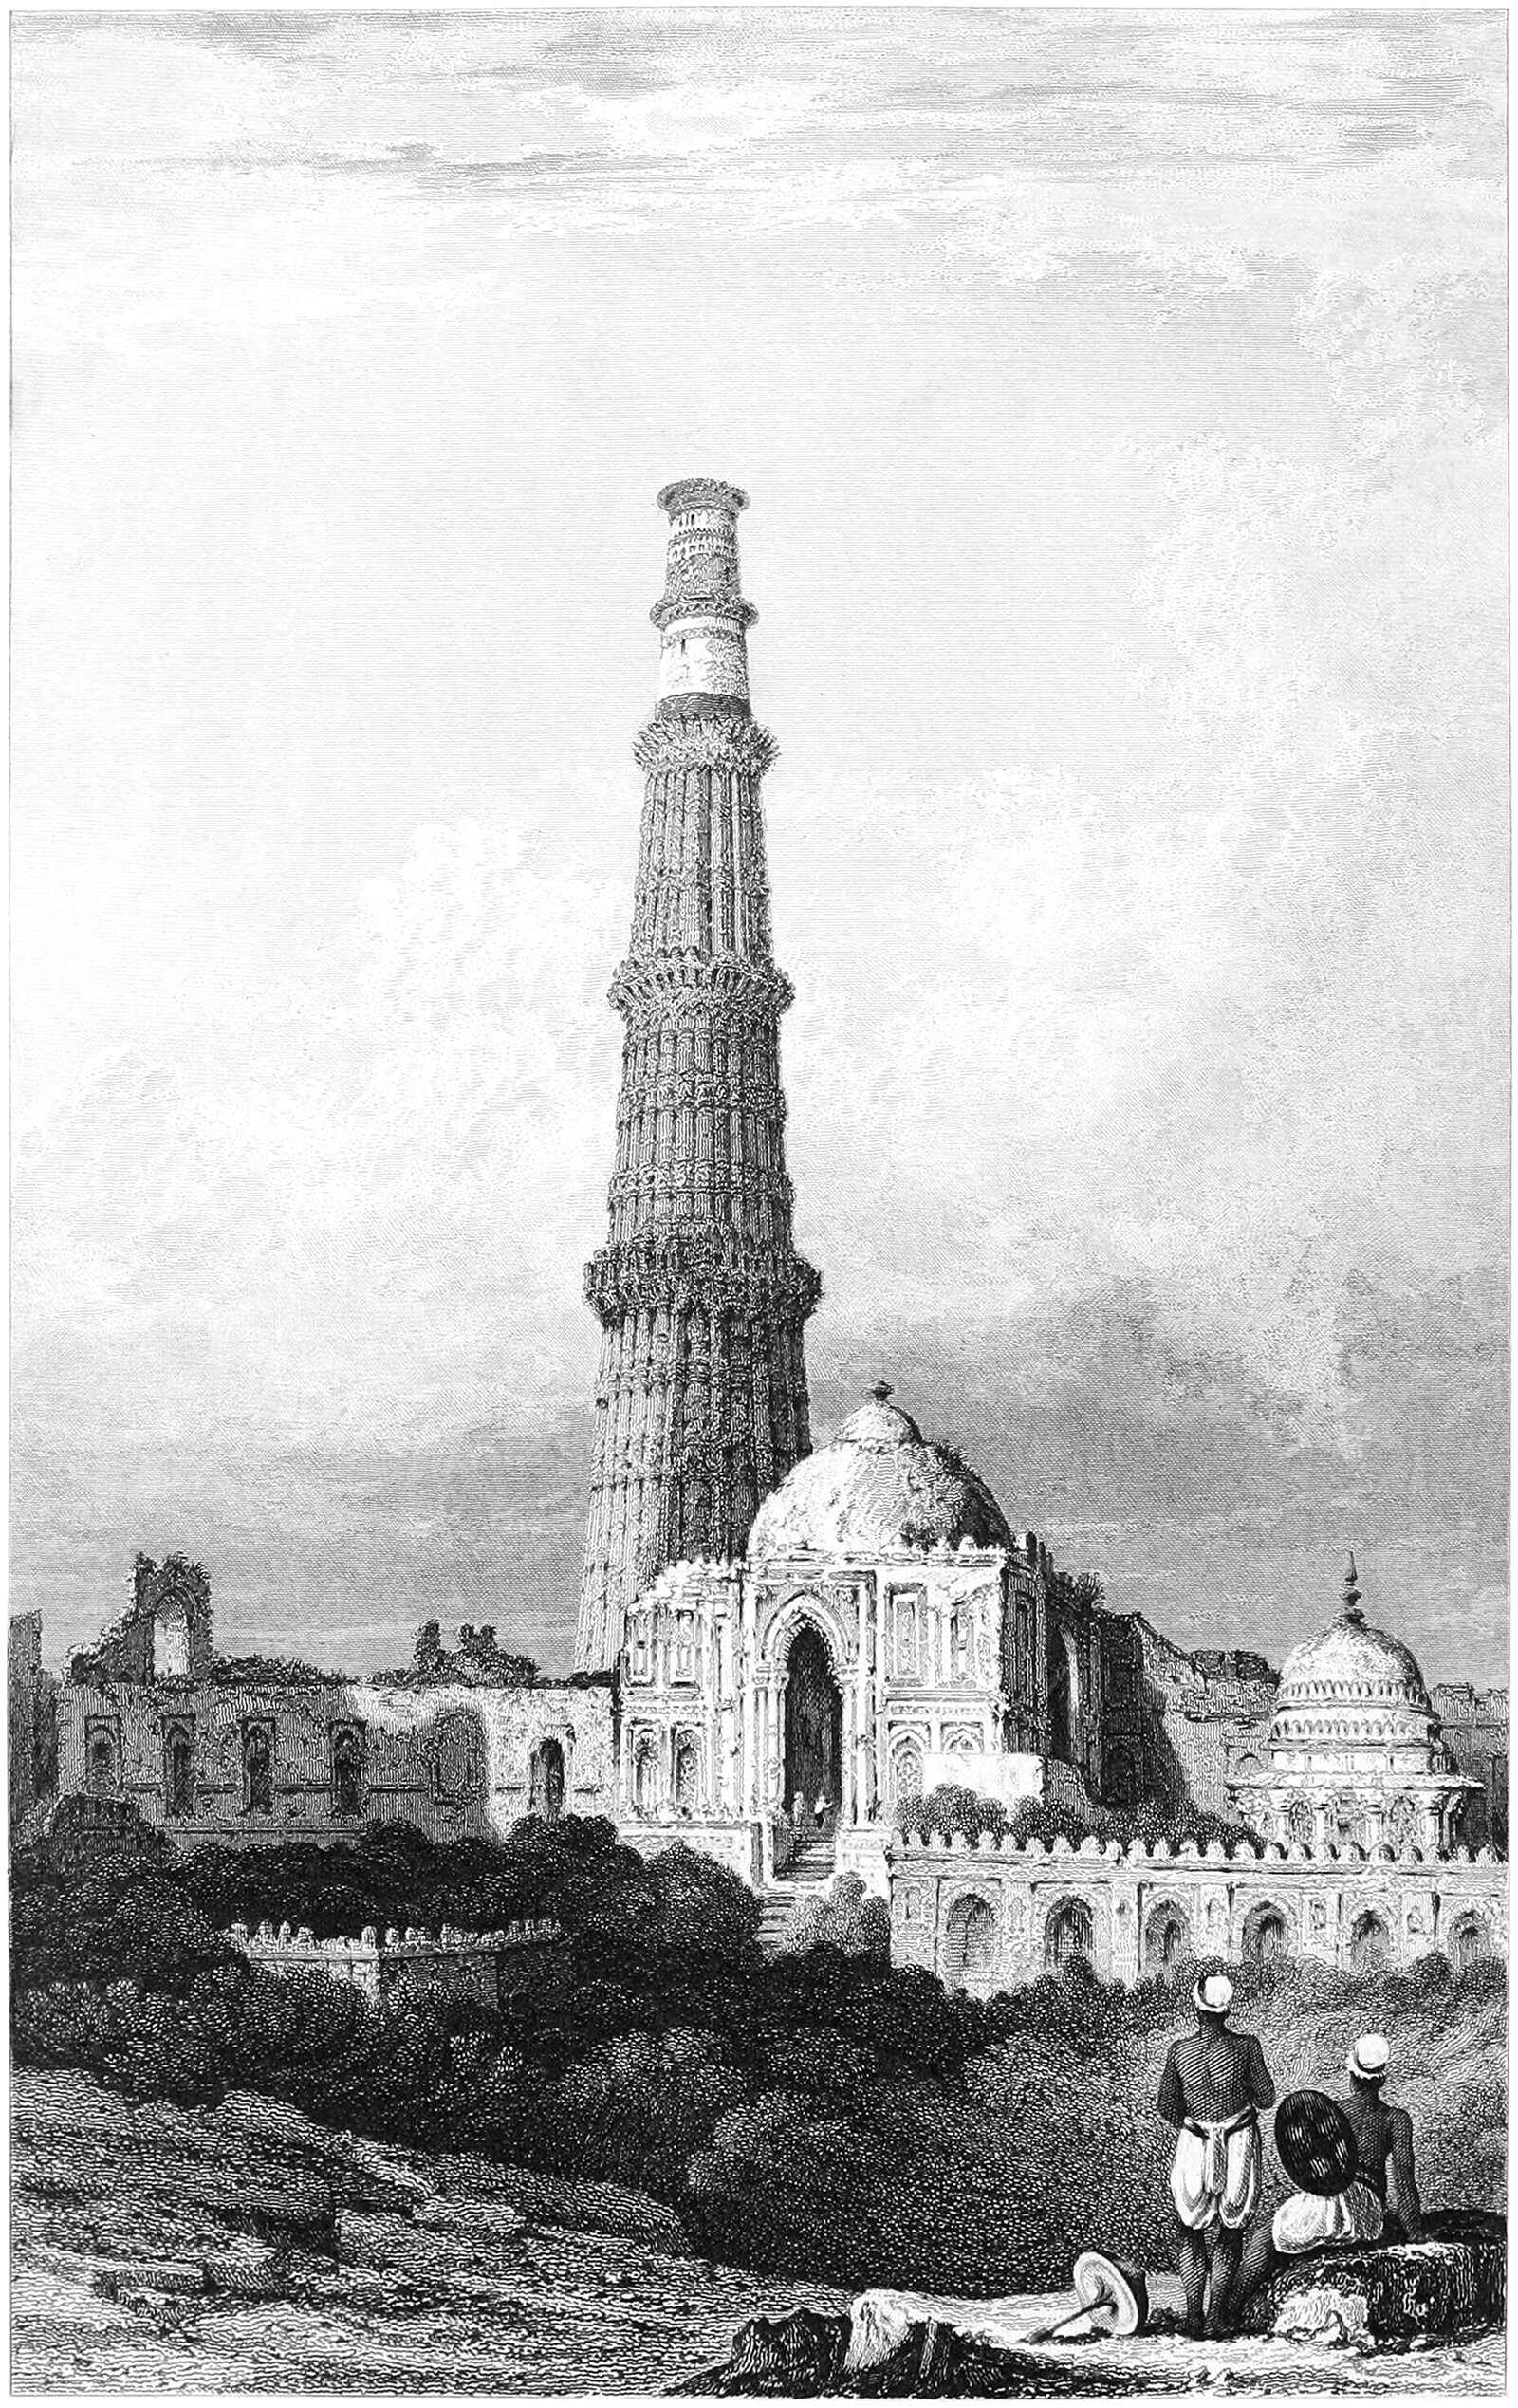 Qutub Minar - Islamic Architecture in India-saigonsouth.com.vn